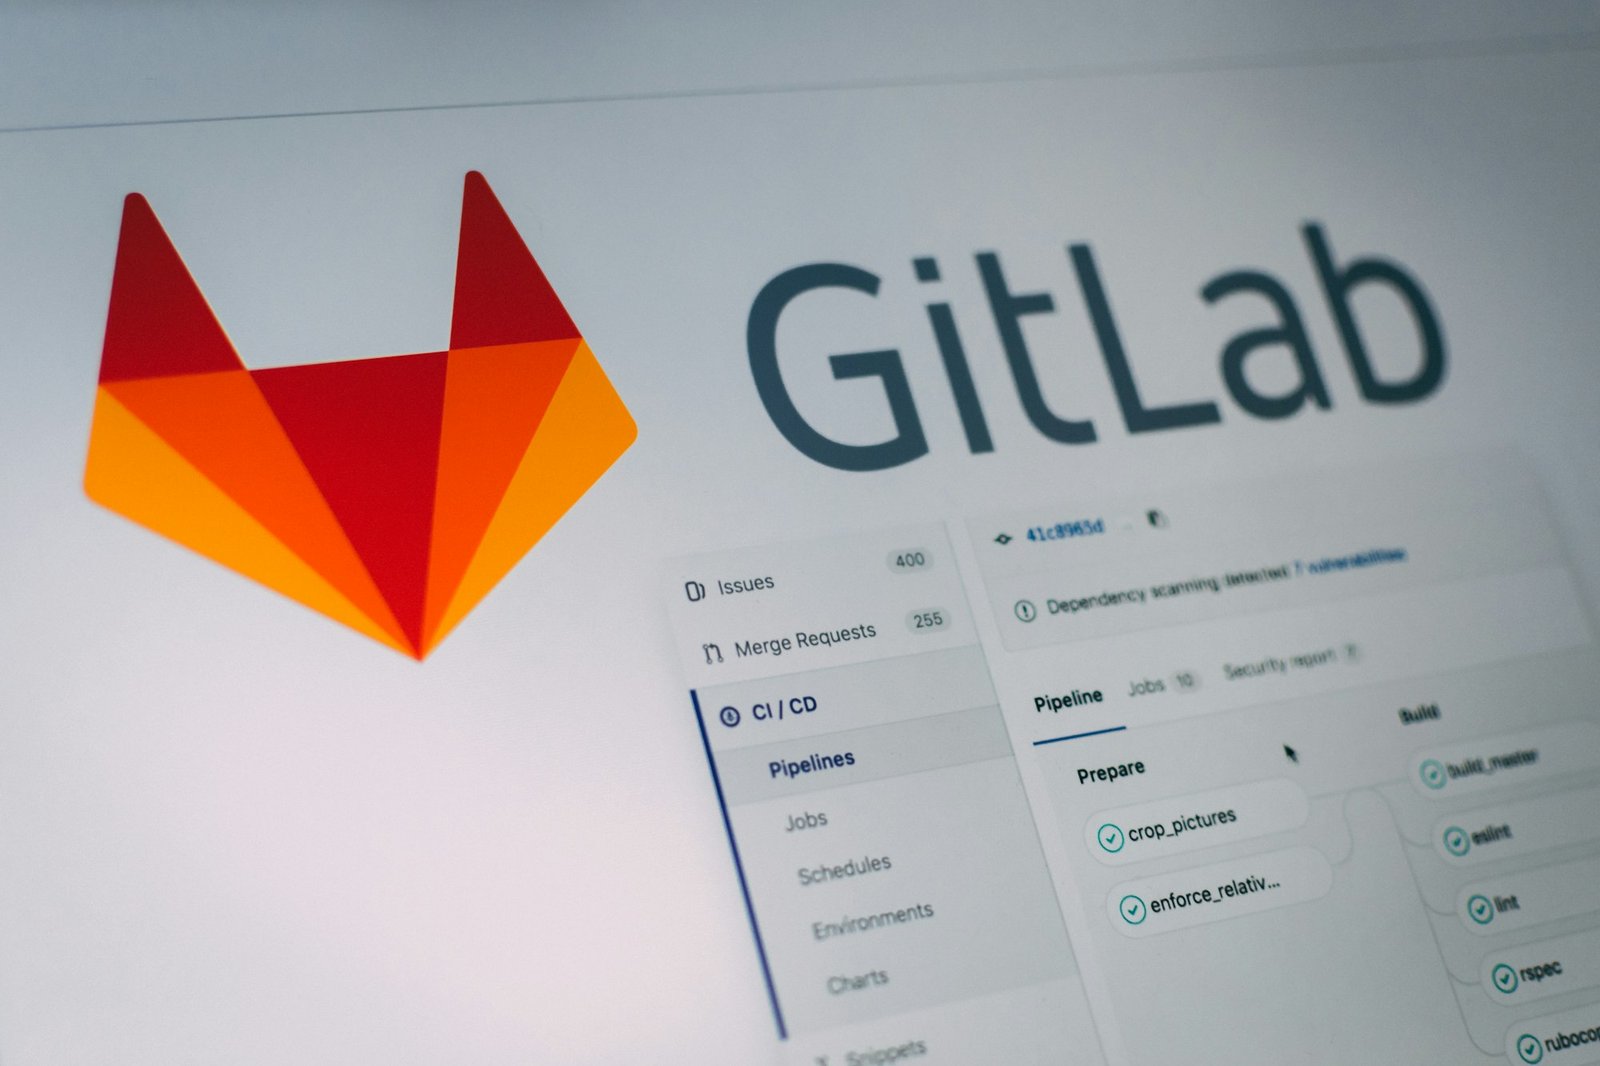 Google-backed software developer GitLab explores sale